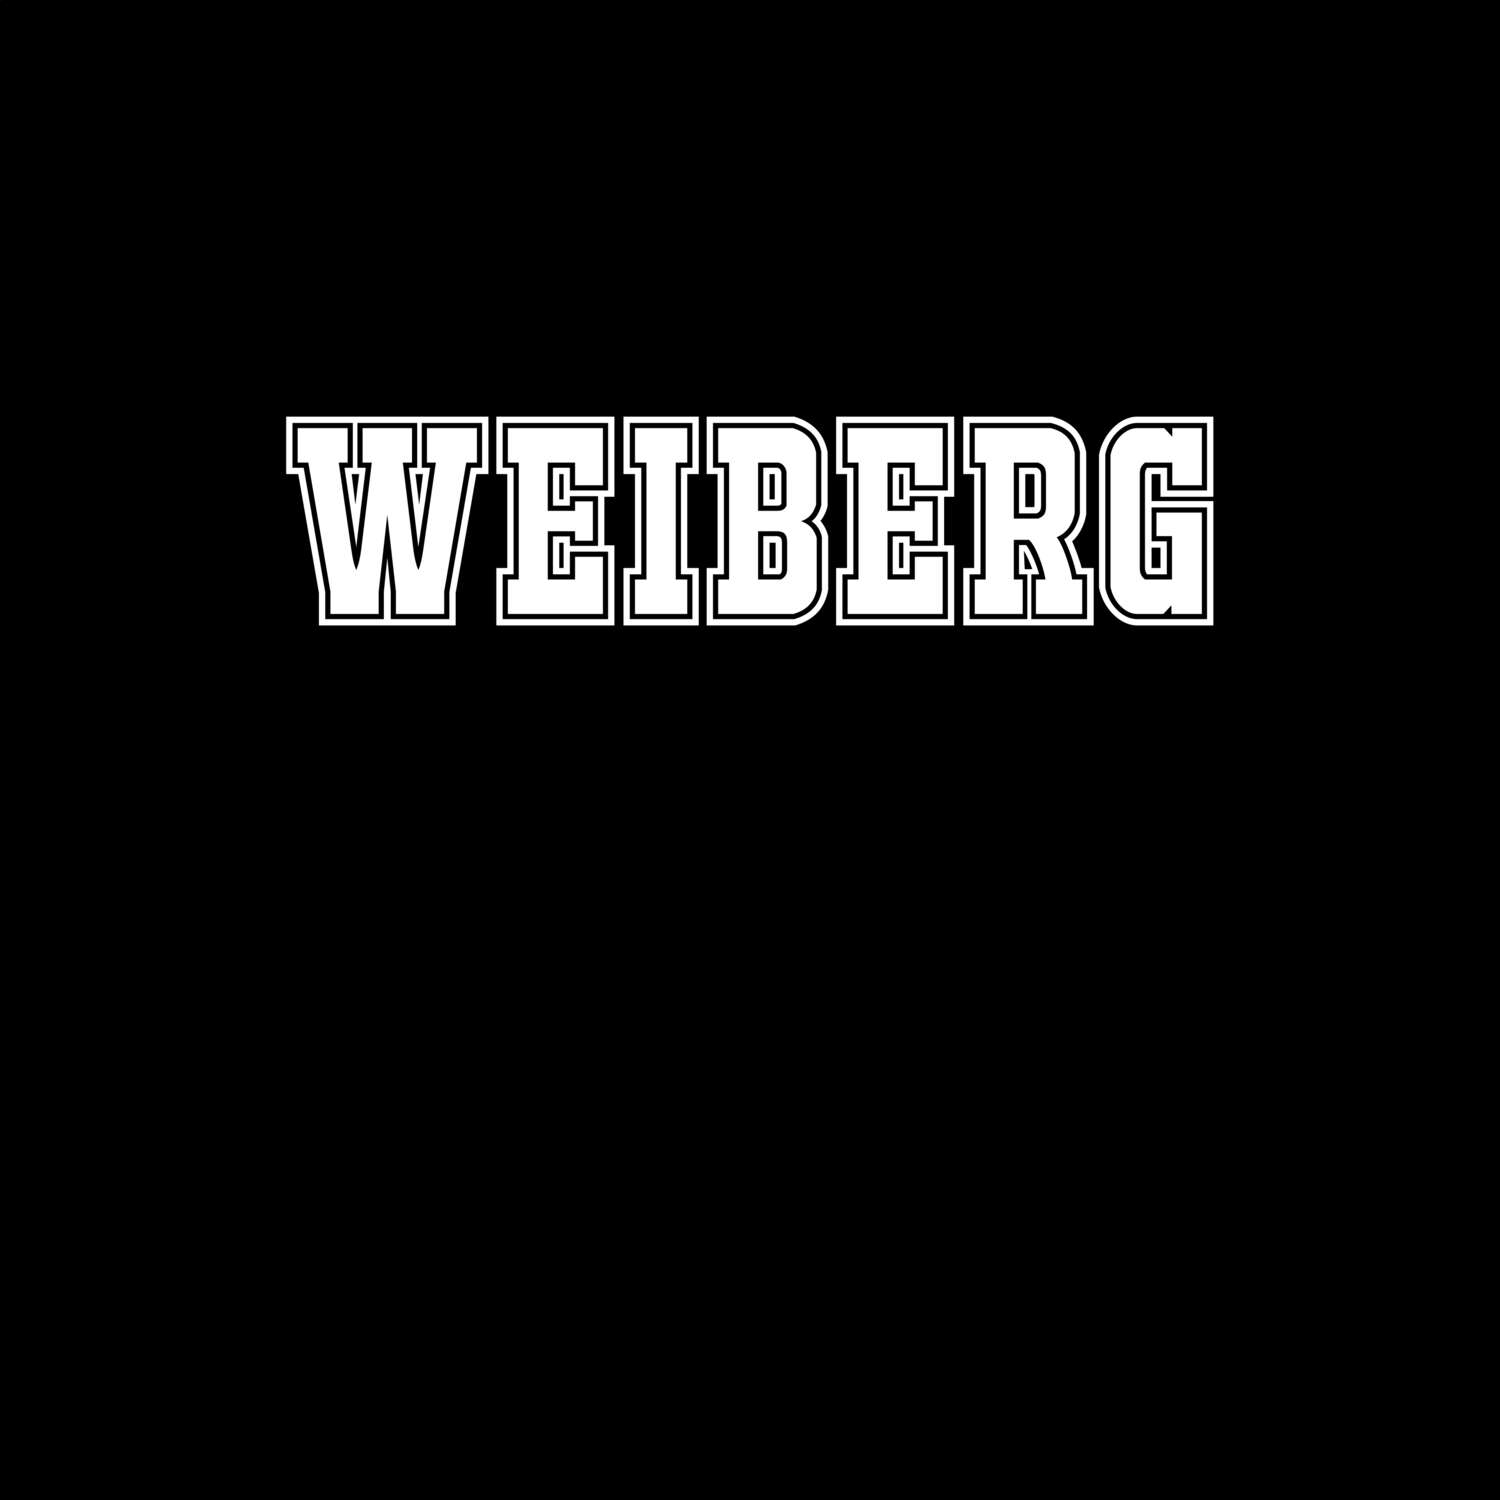 Weiberg T-Shirt »Classic«